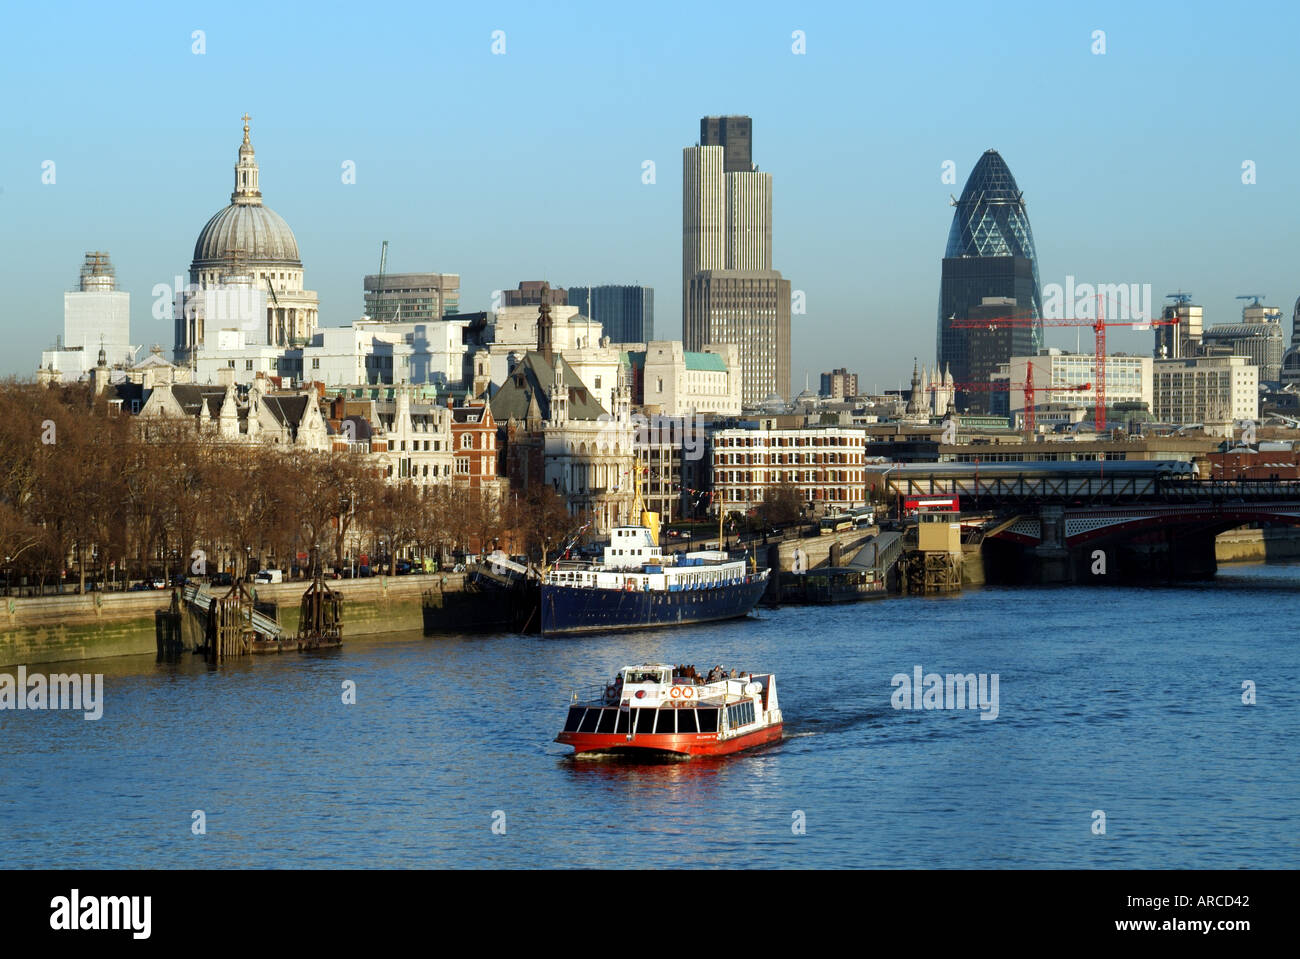 Ville de ville de Londres au-delà de l'Embankment Tamise vus de Waterloo Bridge avec style bateau Bateaux mouches tour Banque D'Images